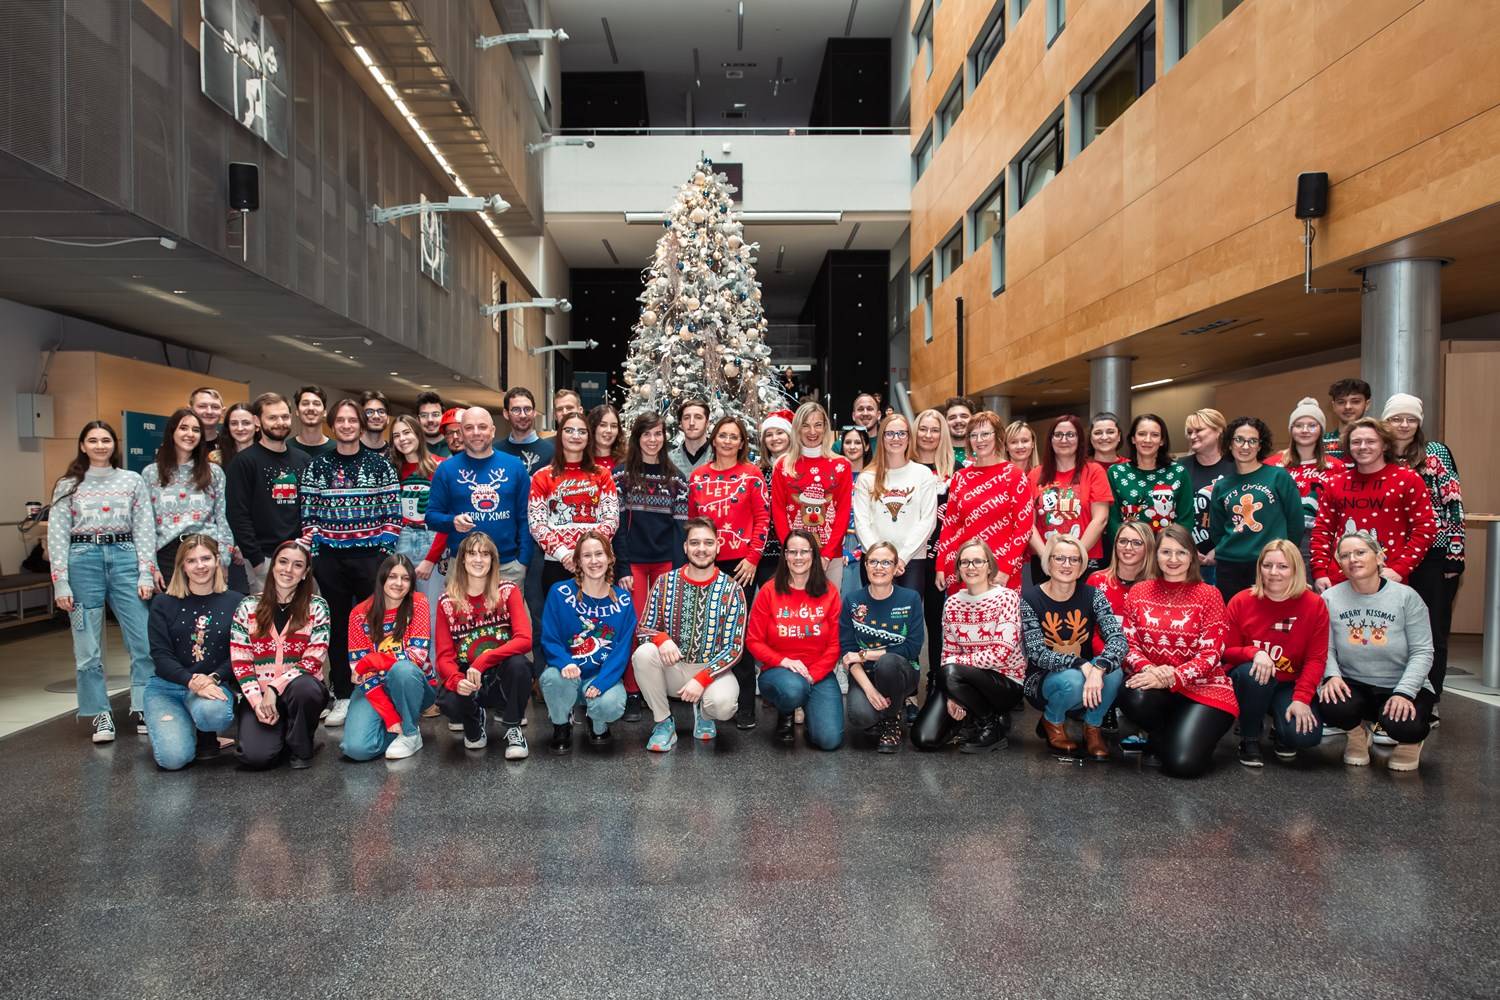 Skupinska fotografija zaposlenih in študentov na FERI v božičnih puloverjih. Bolj resna.